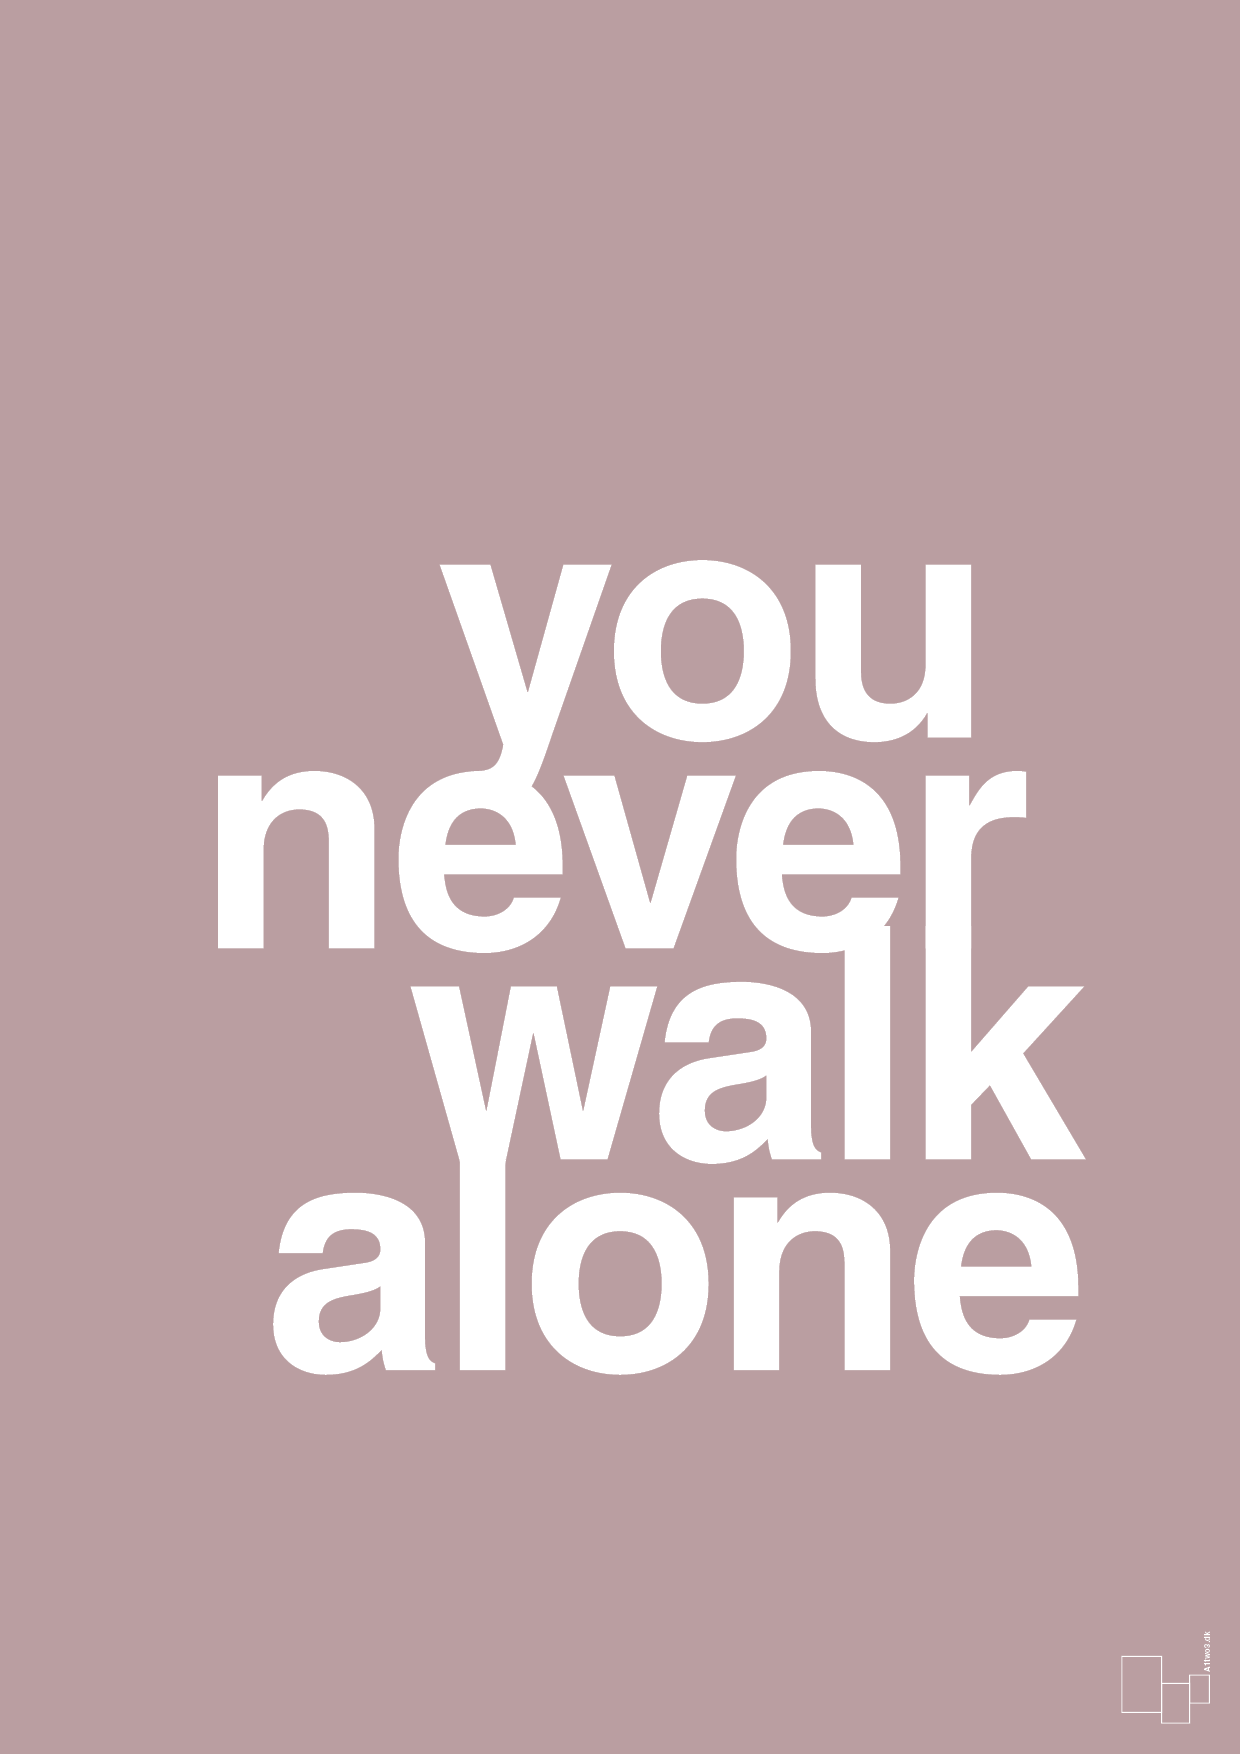 you never walk alone - Plakat med Ordsprog i Light Rose